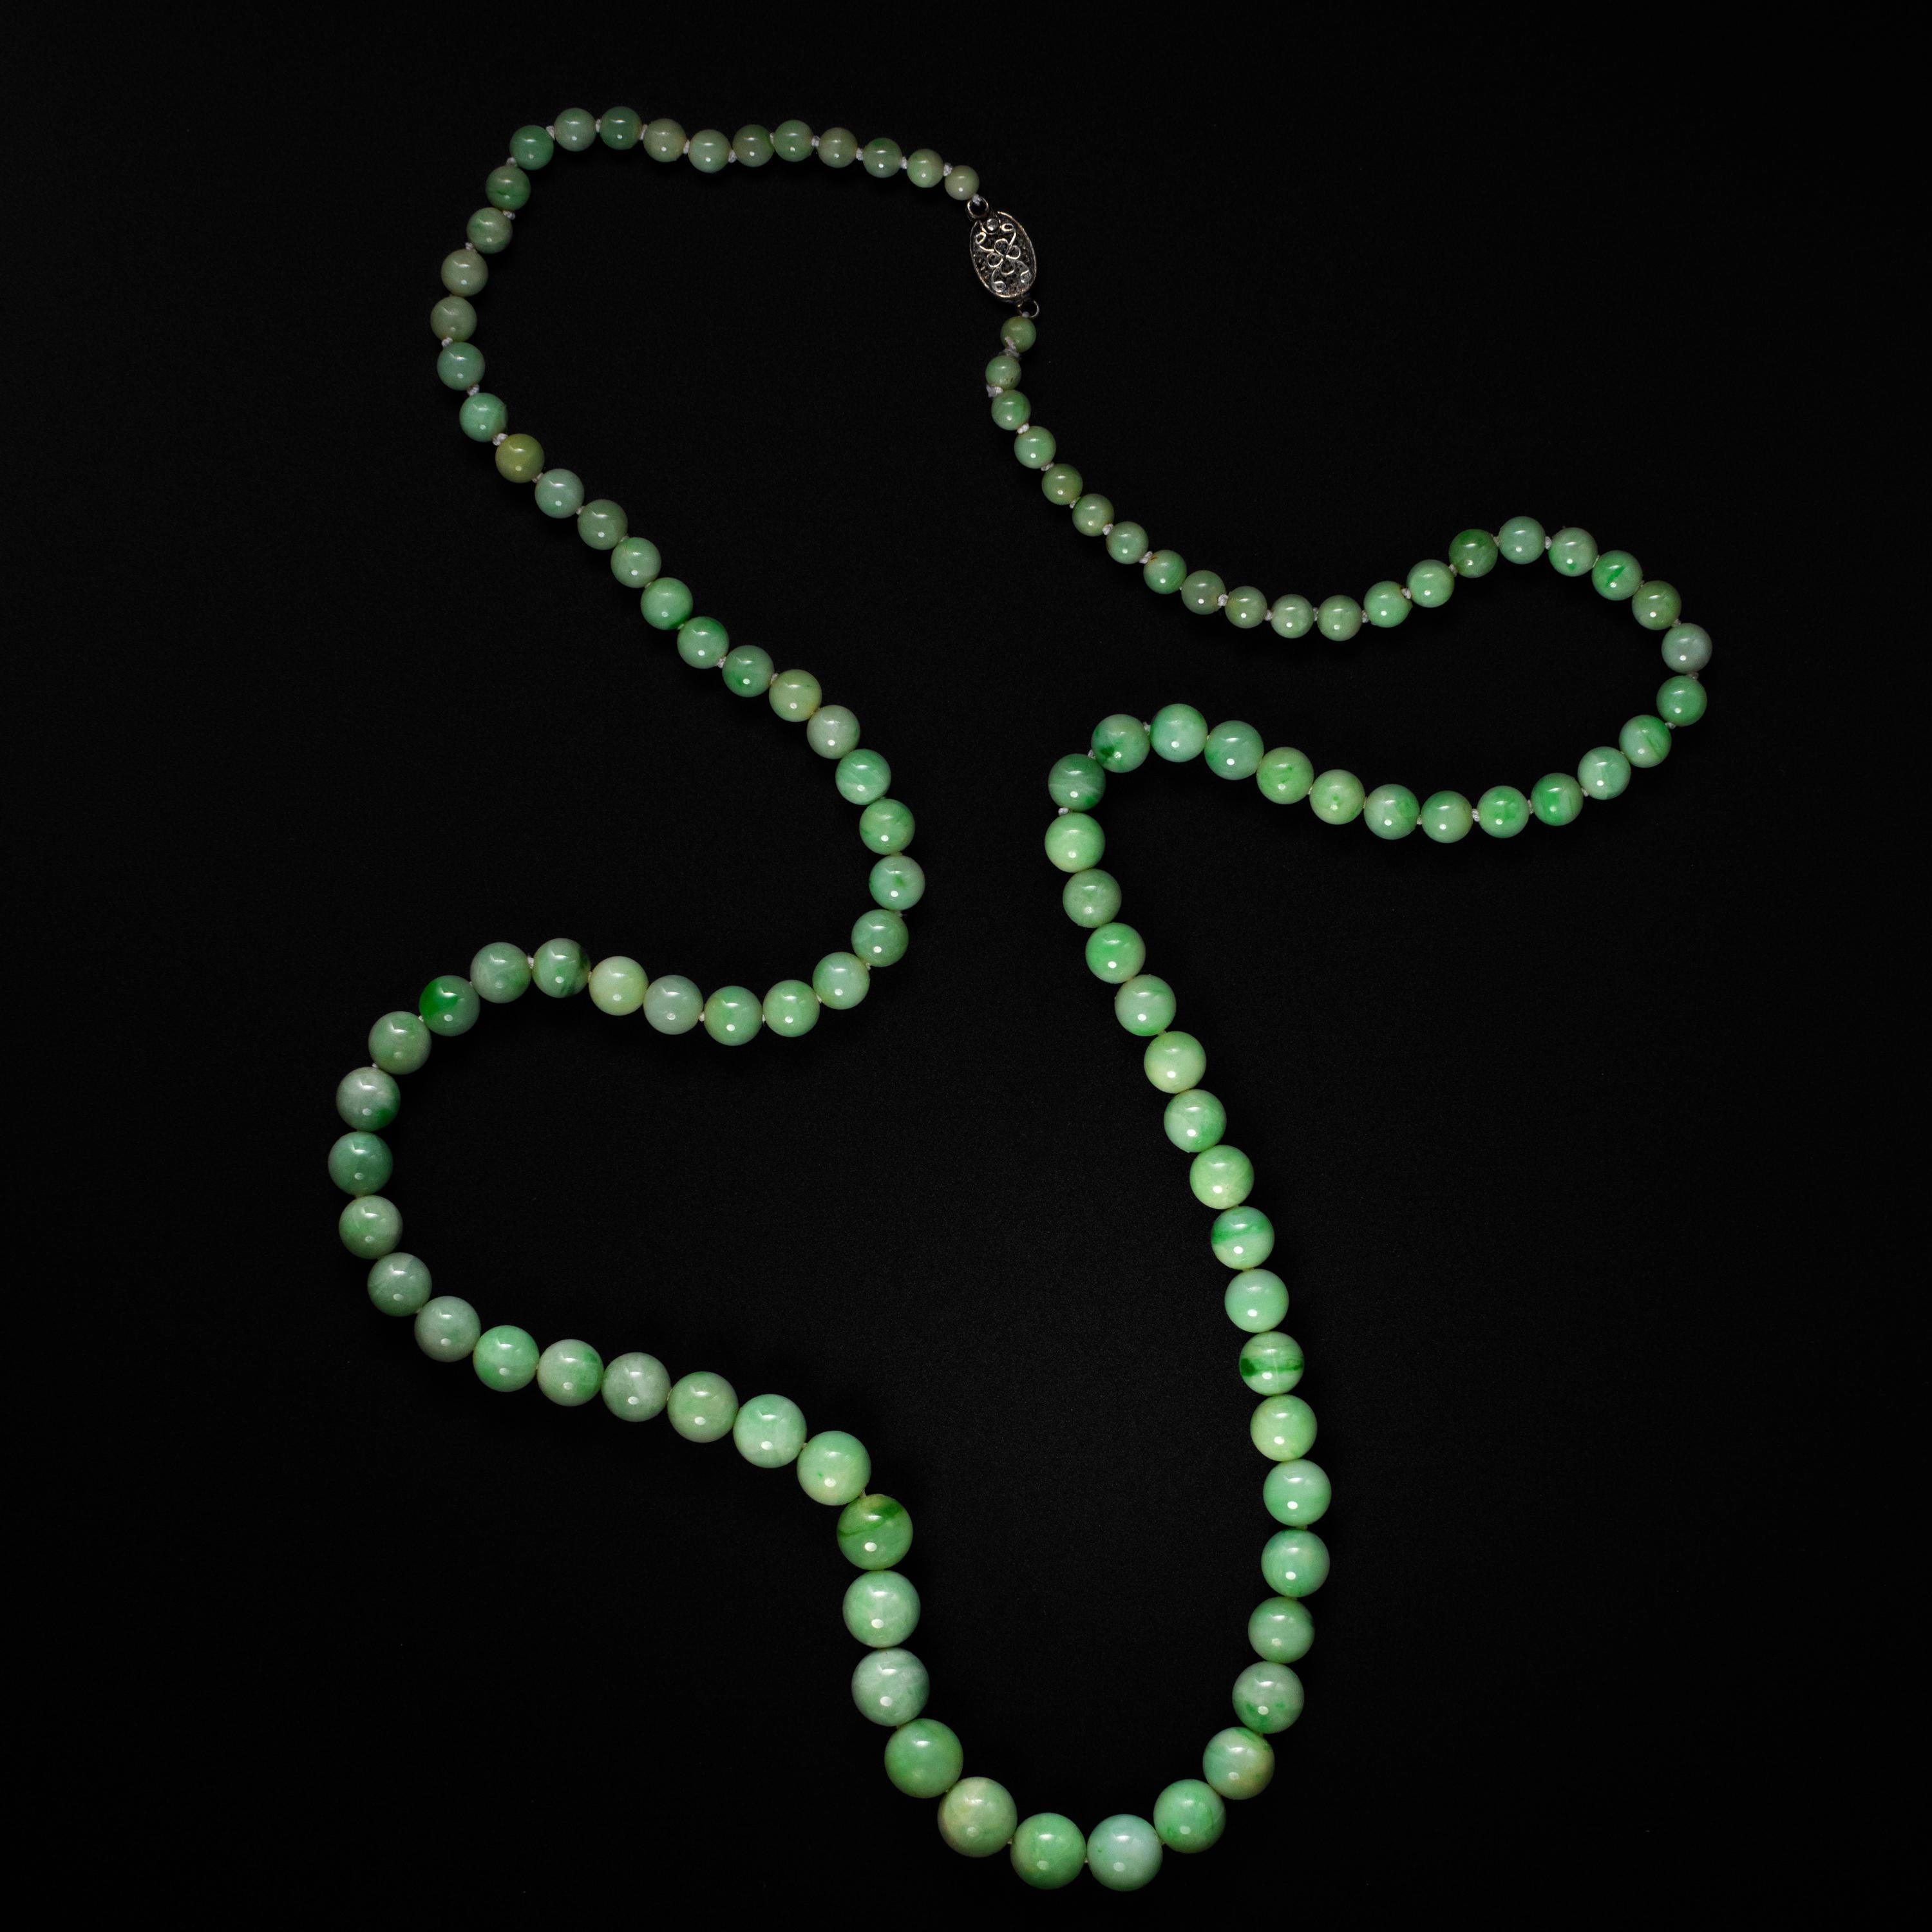 Lumineux, ce collier radieux de l'époque Art déco (vers les années 1920-1930) est composé de 107 perles de jadéite birmane naturelle et non traitée, sculptées et polies à la main. La taille des perles varie de 4,13 mm à 9,38 mm.

Dans l'ensemble,